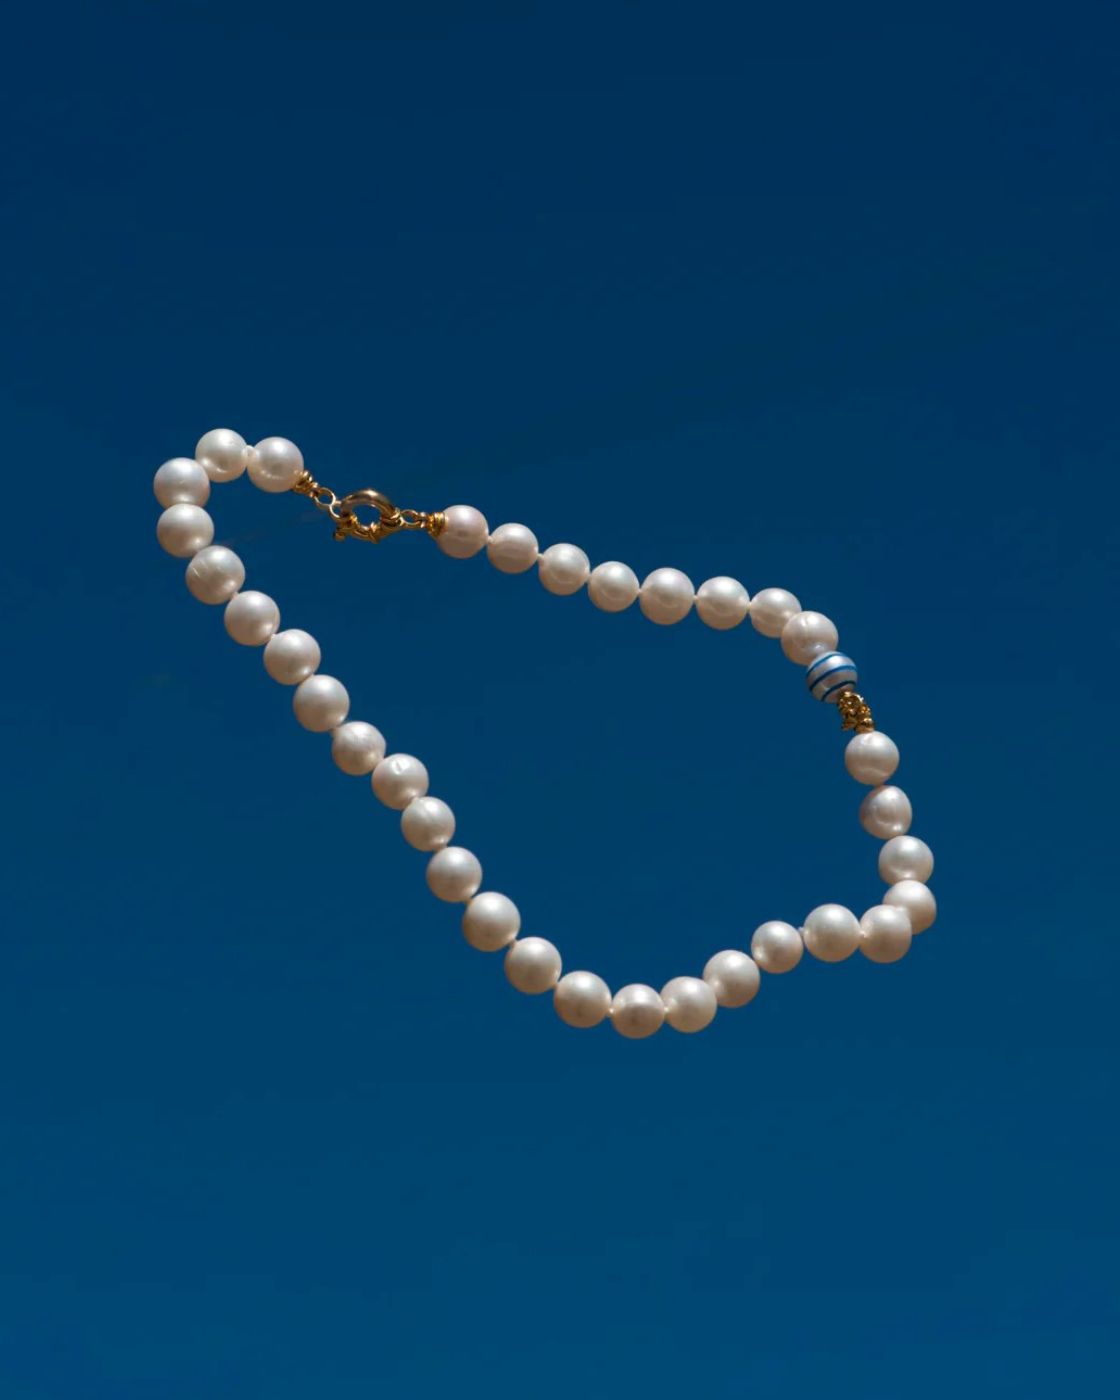 Die klassische Perlenkette klein – blaue Streifen